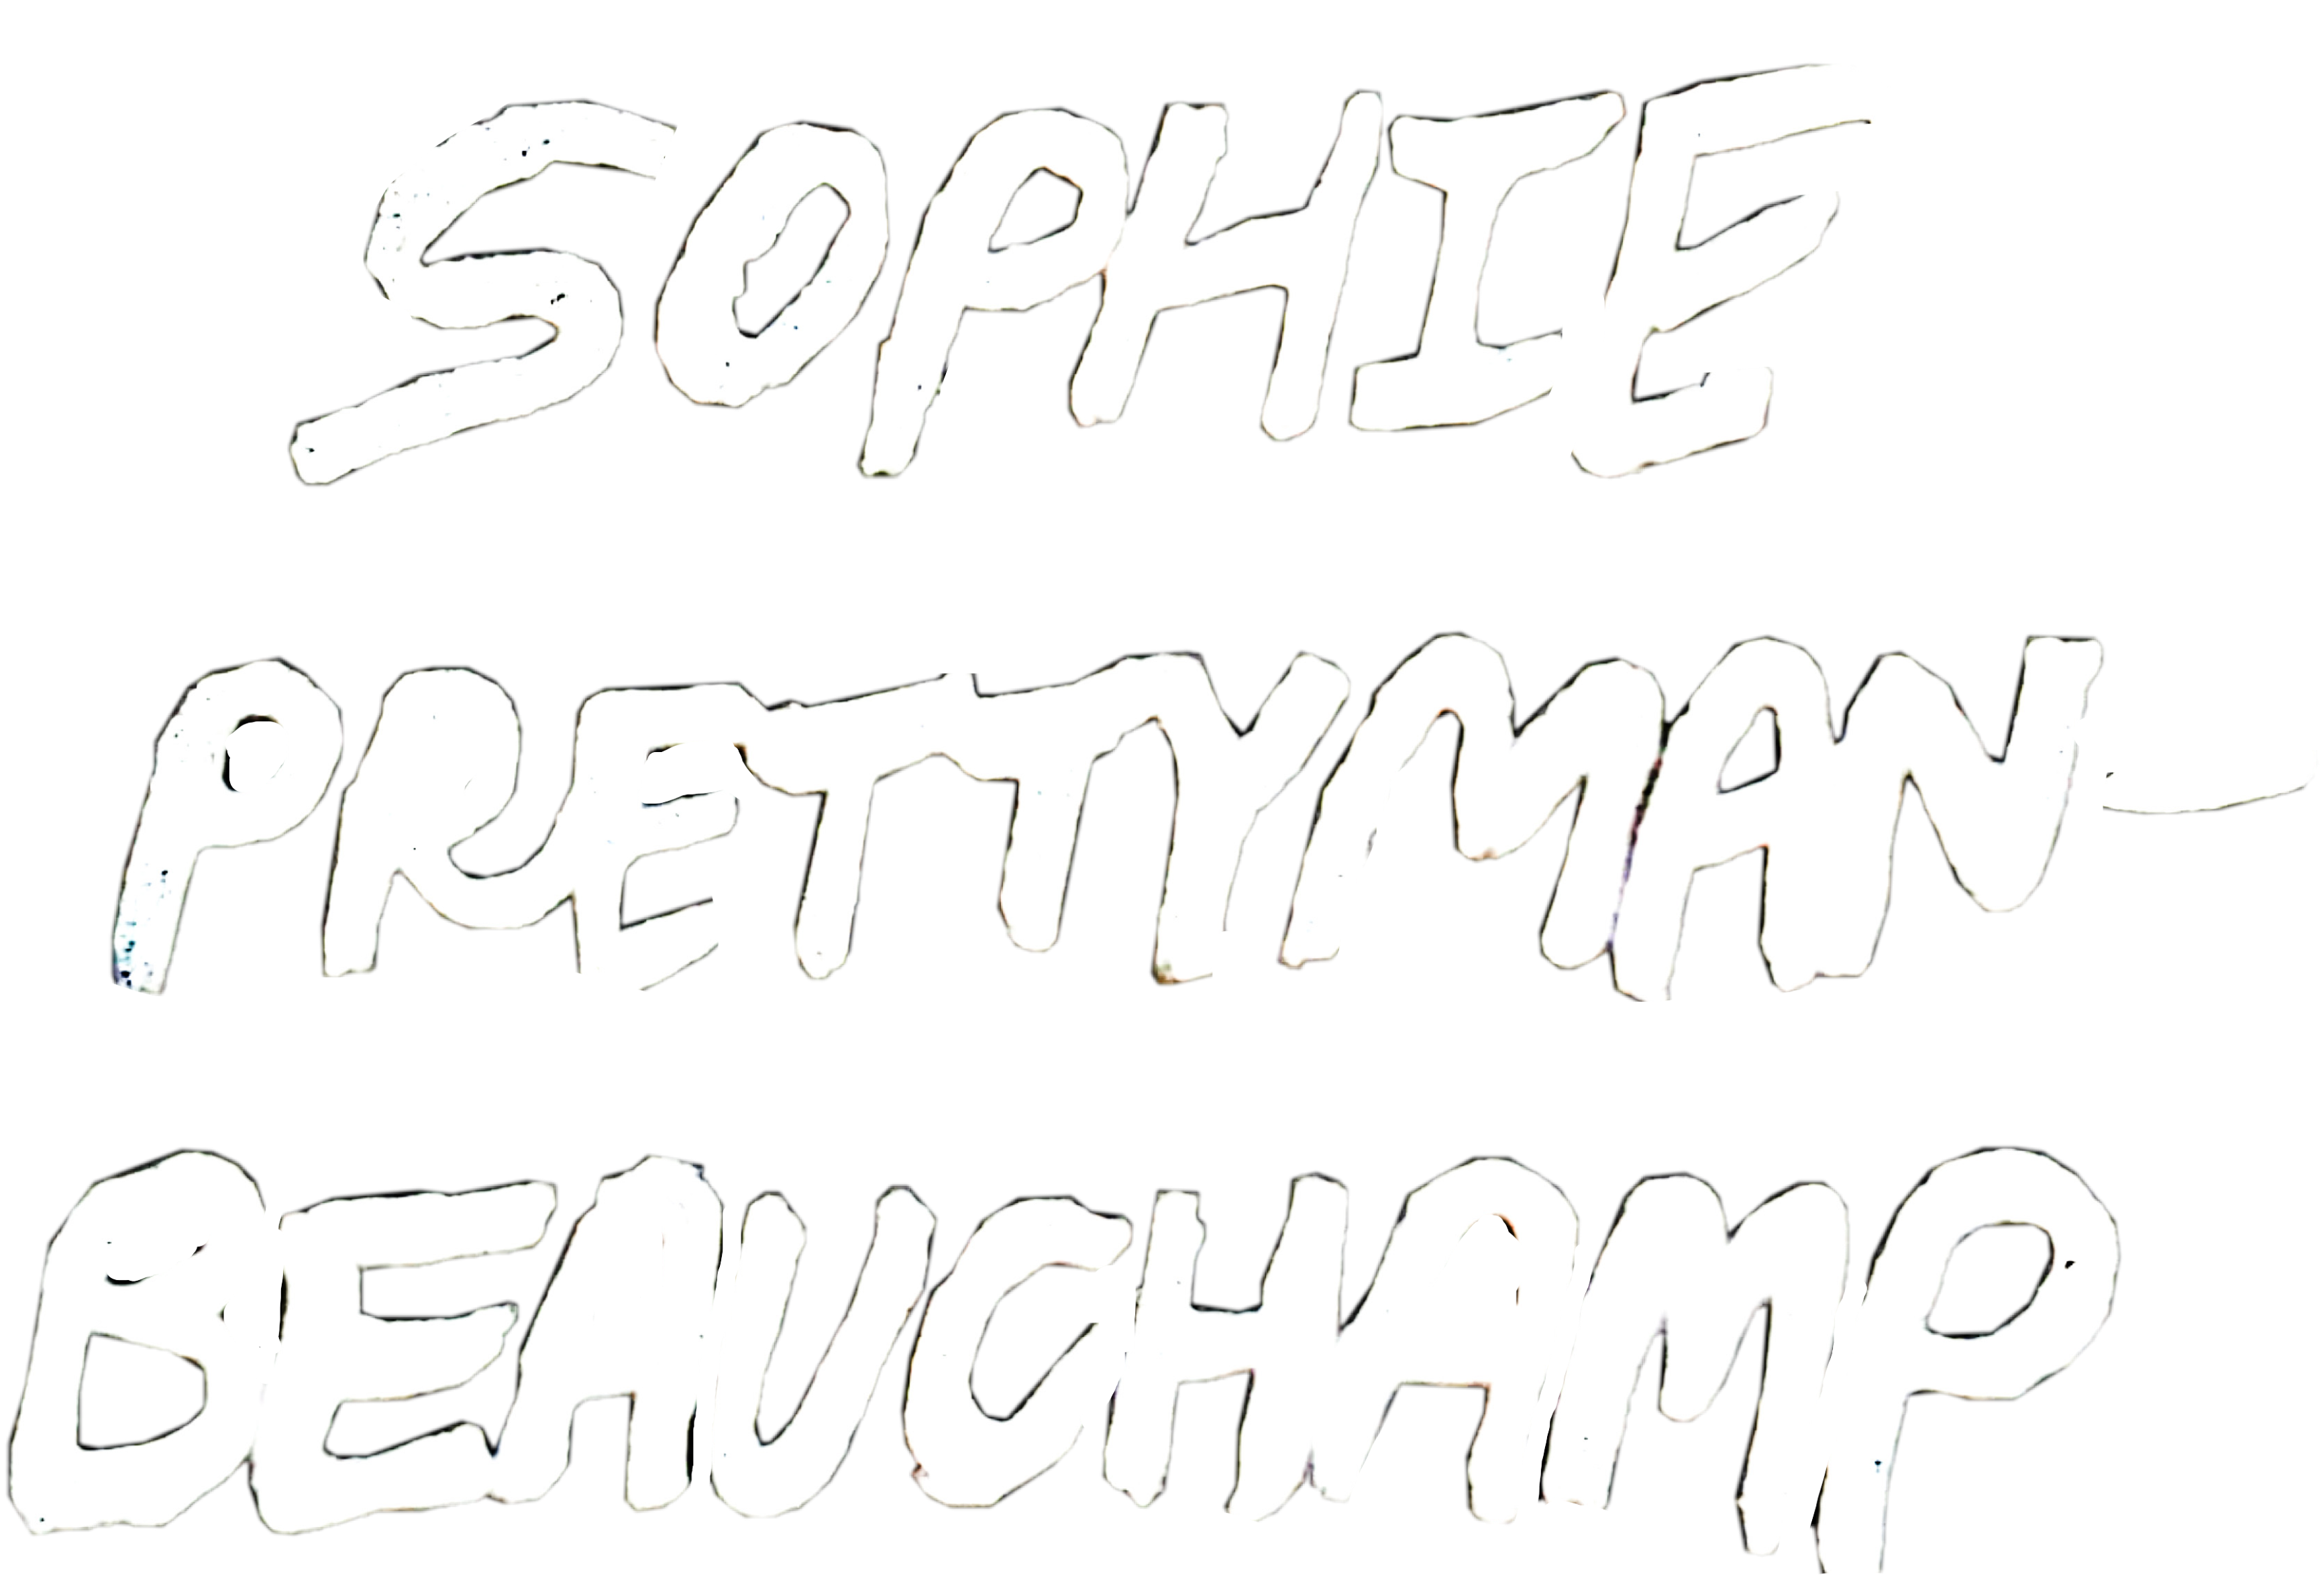 Sophie Prettyman-Beauchamp